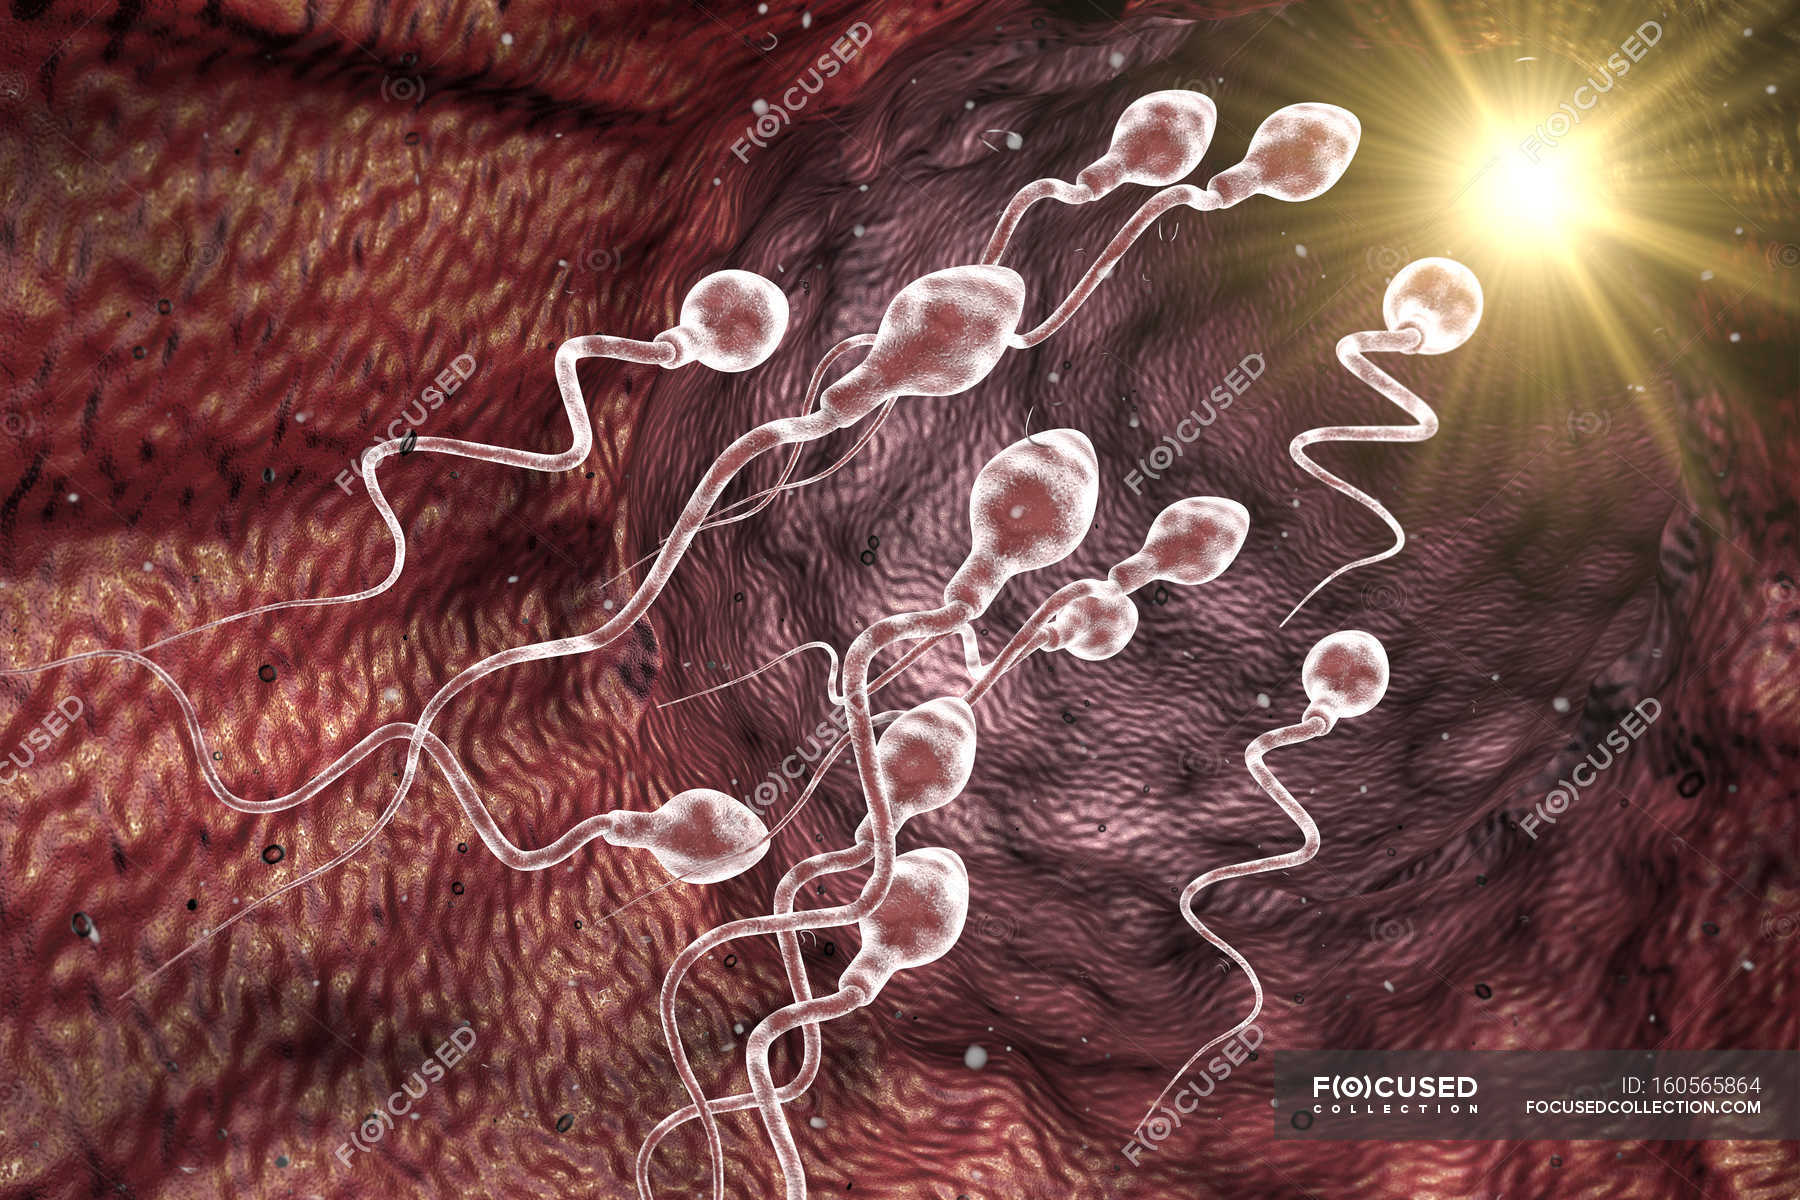 влияние на организм женский мужской спермы фото 88